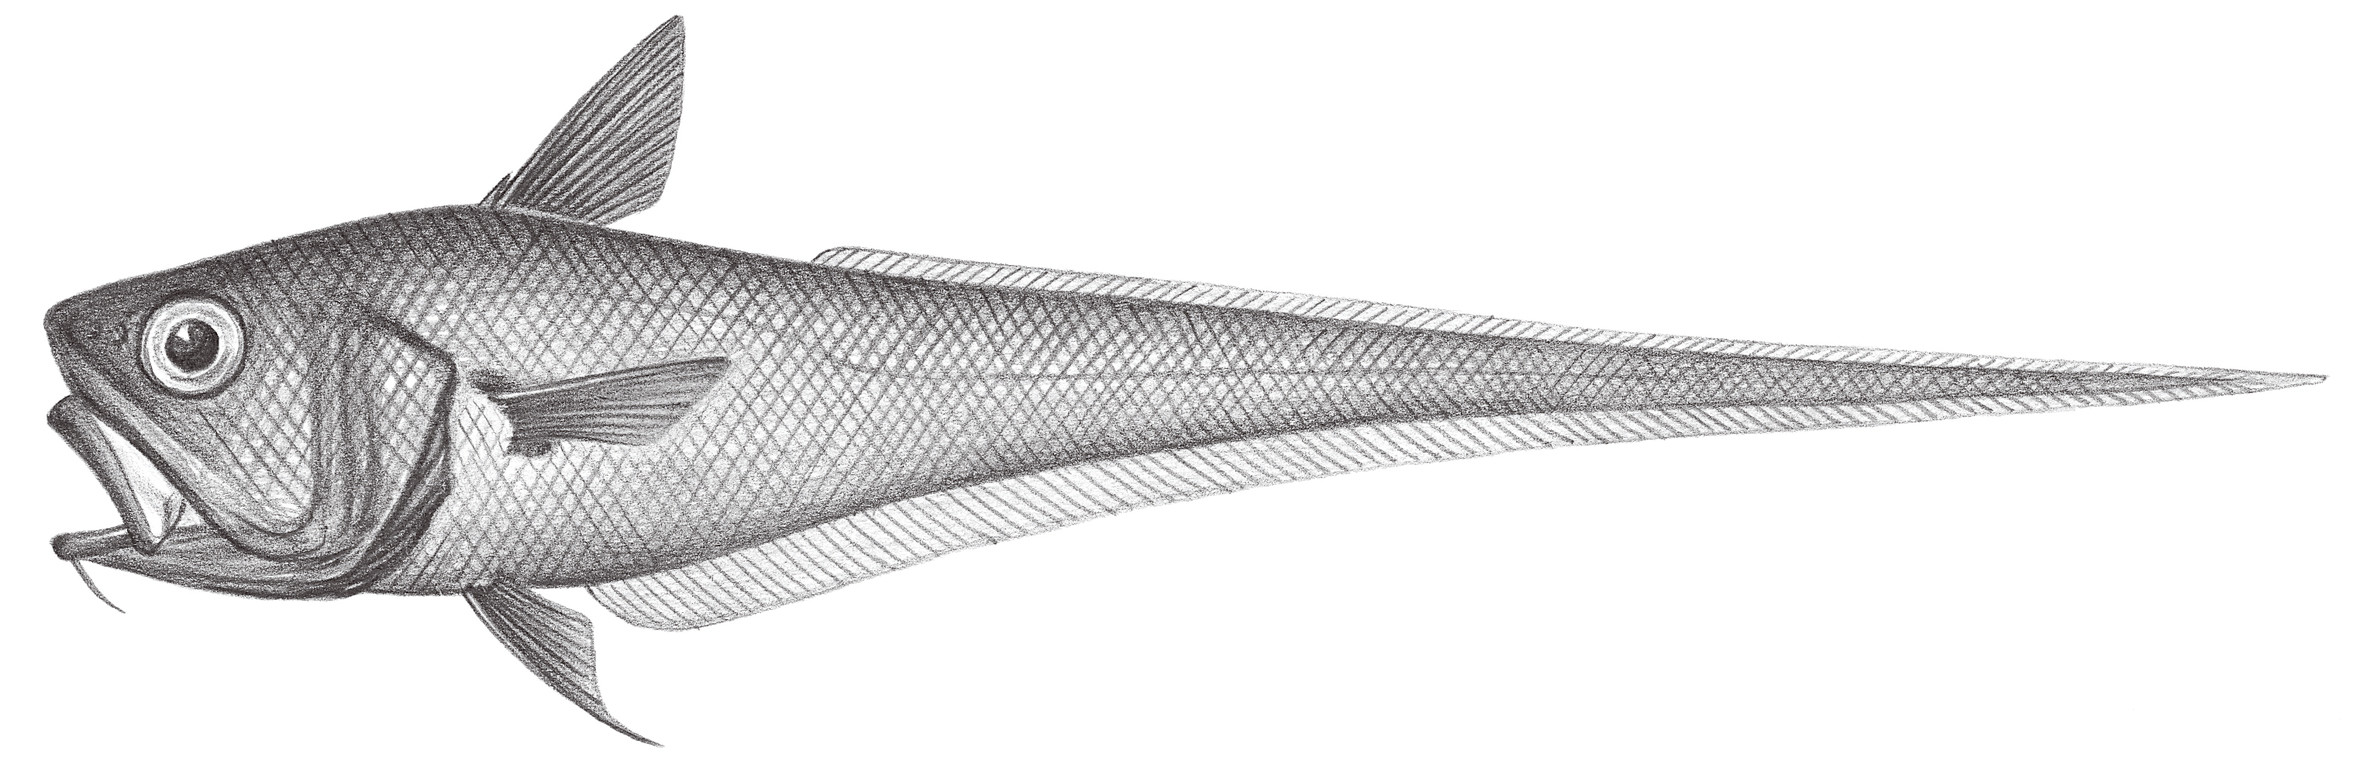 596.	大鰭凹腹鱈 Ventrifossa macroptera Okamura, 1982